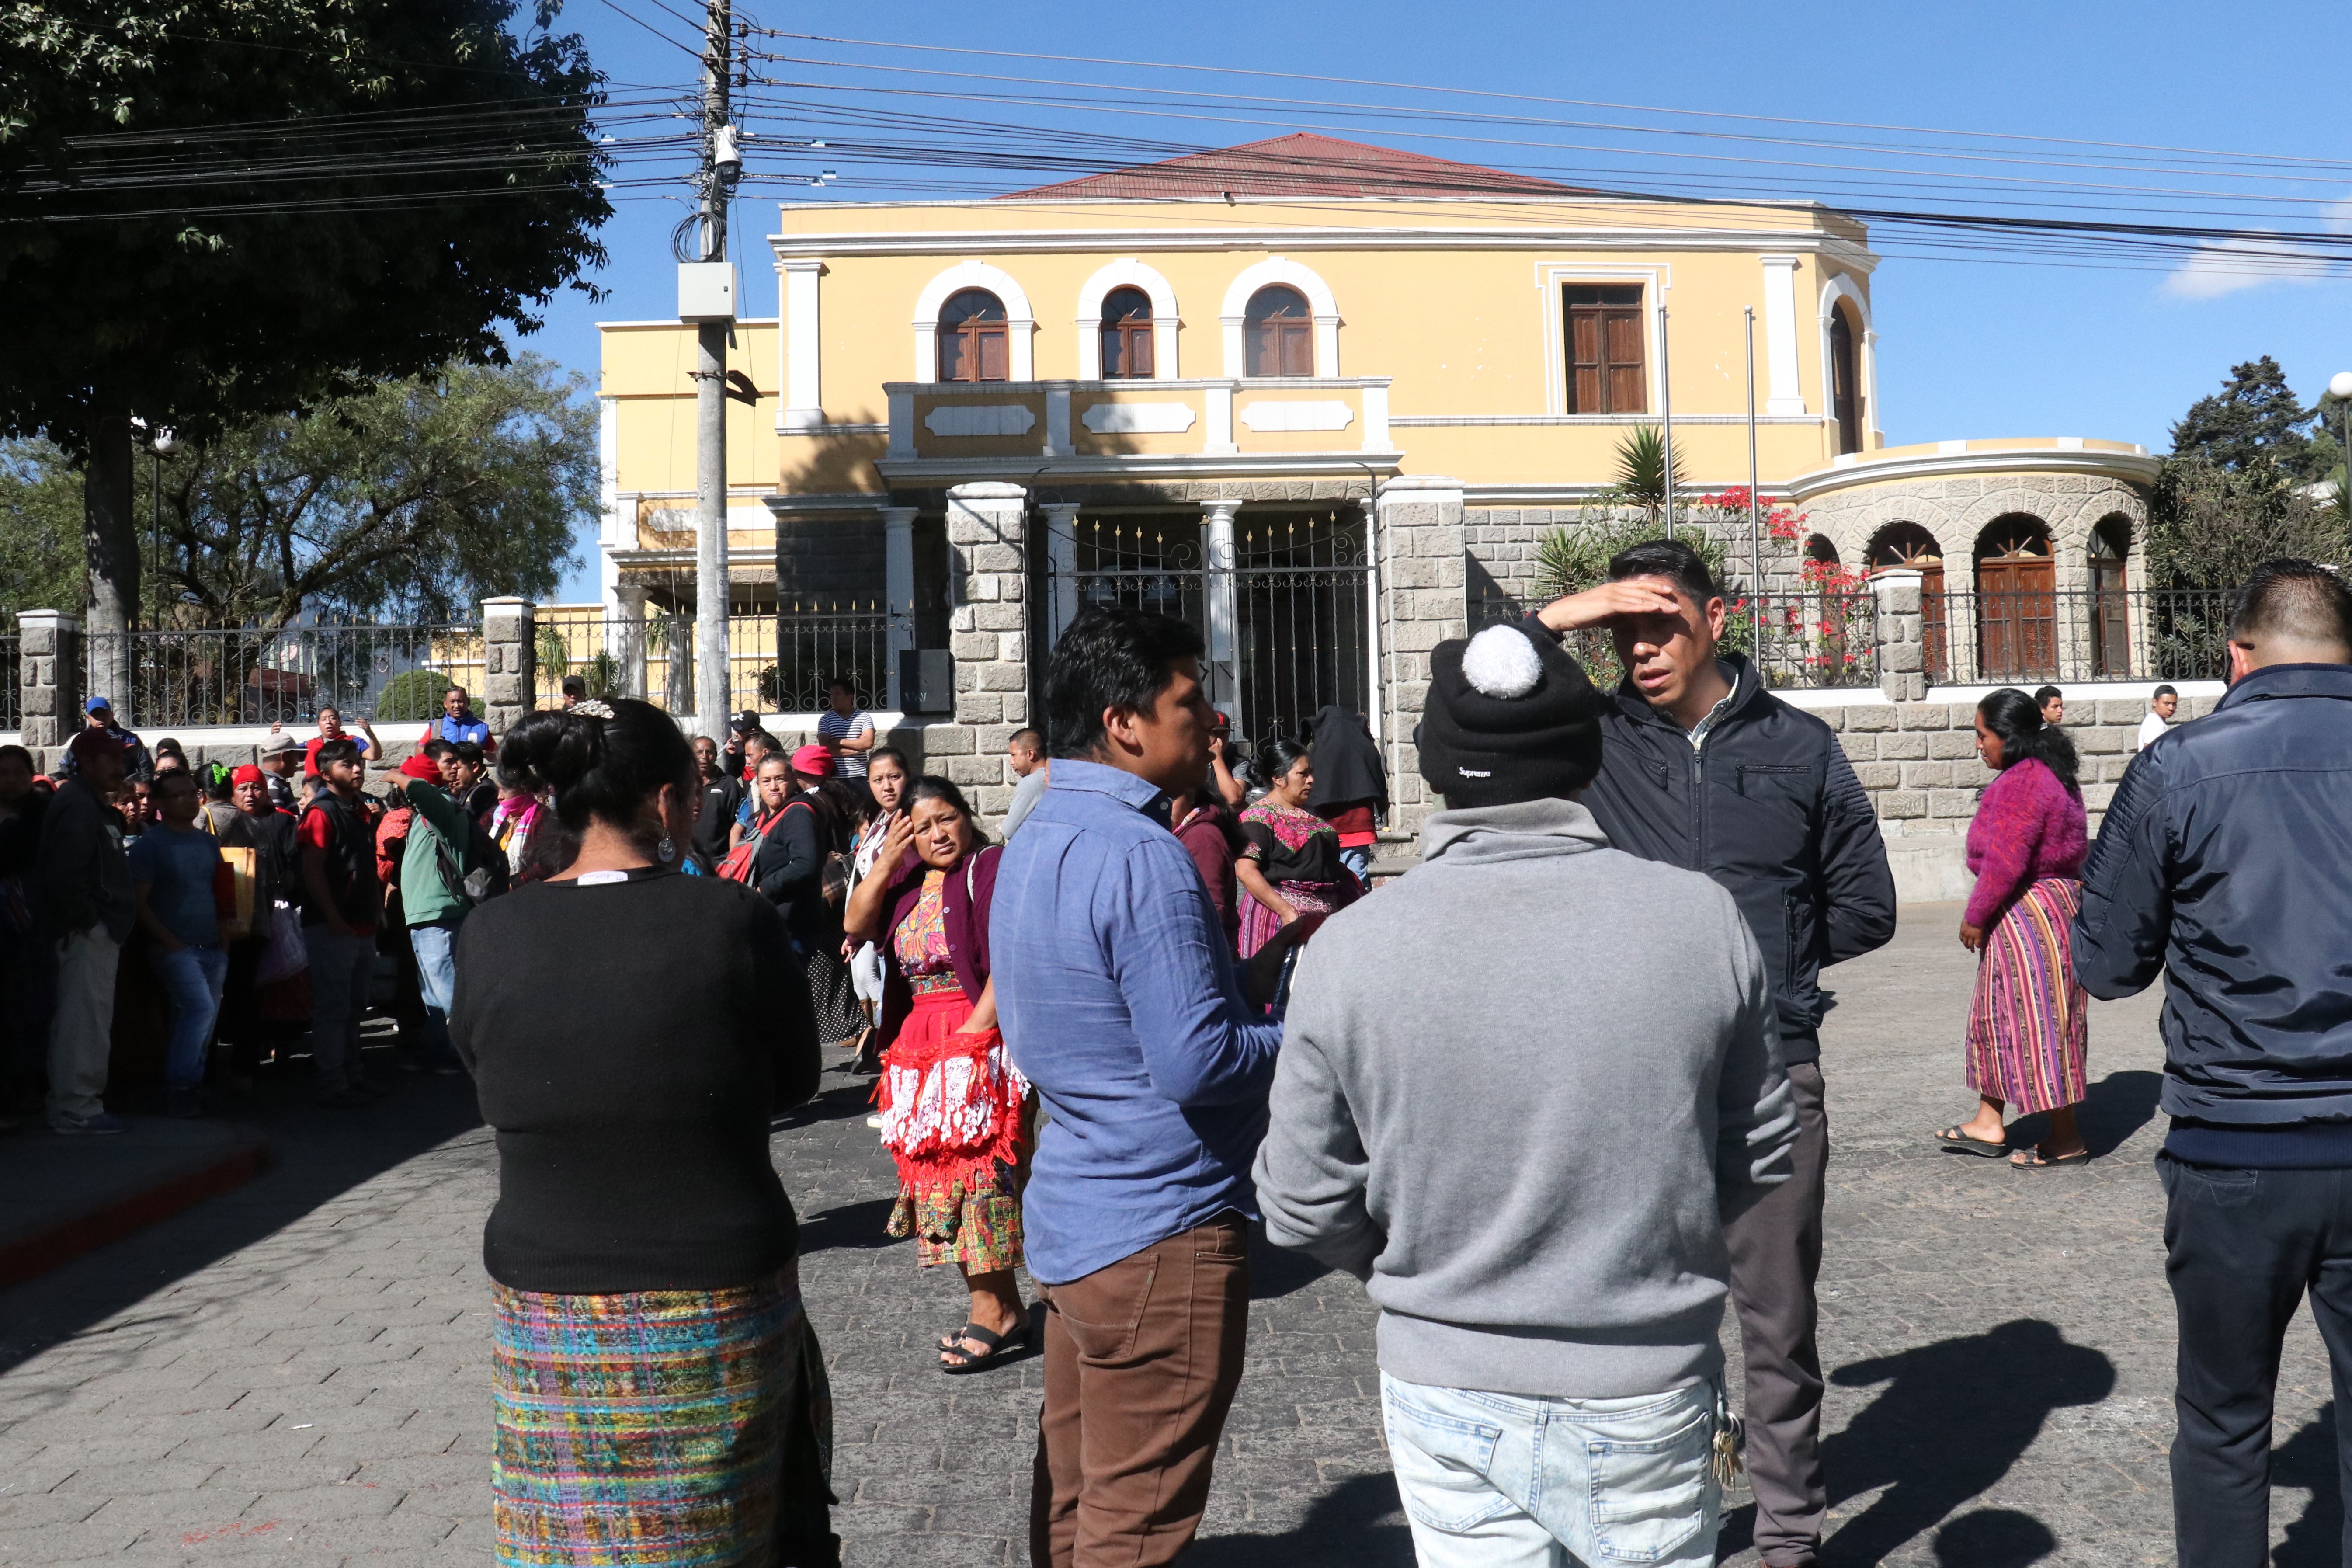 Vendedores de pirotecnia no están de acuerdo con el traslado. (Foto Prensa Libre: Raúl Juárez)